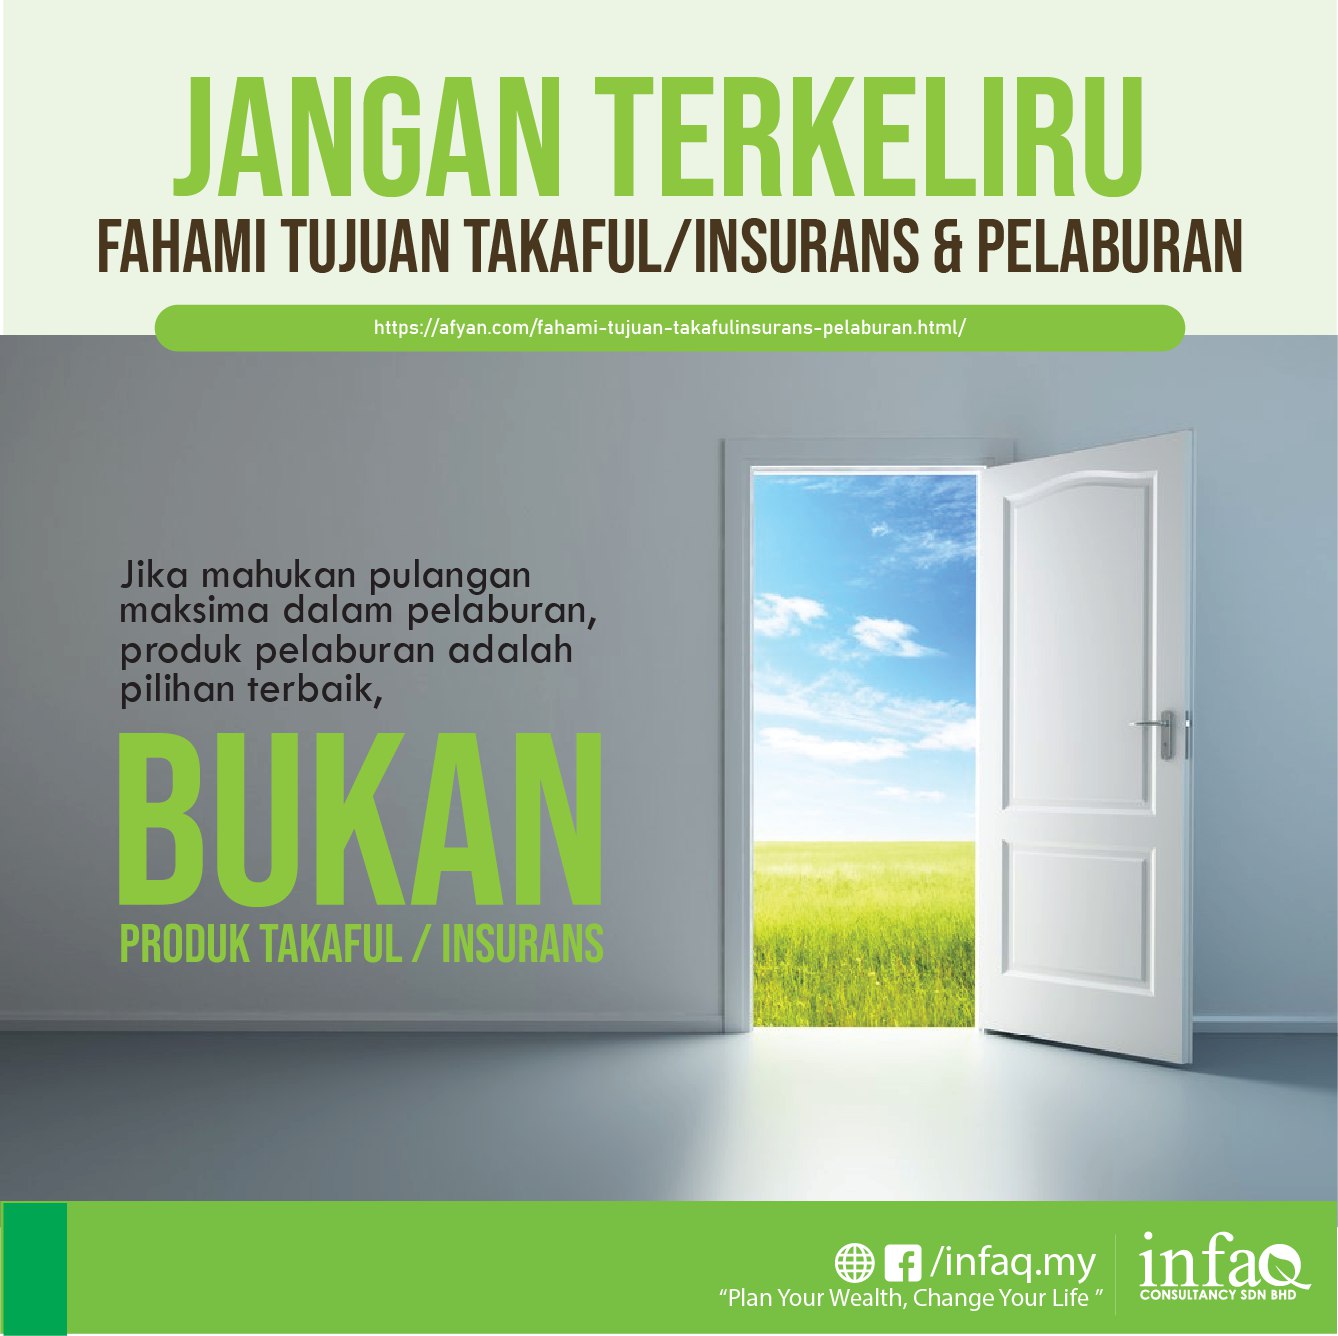 Fahami Tujuan Takaful/Insurans & Pelaburan - Afyan.com